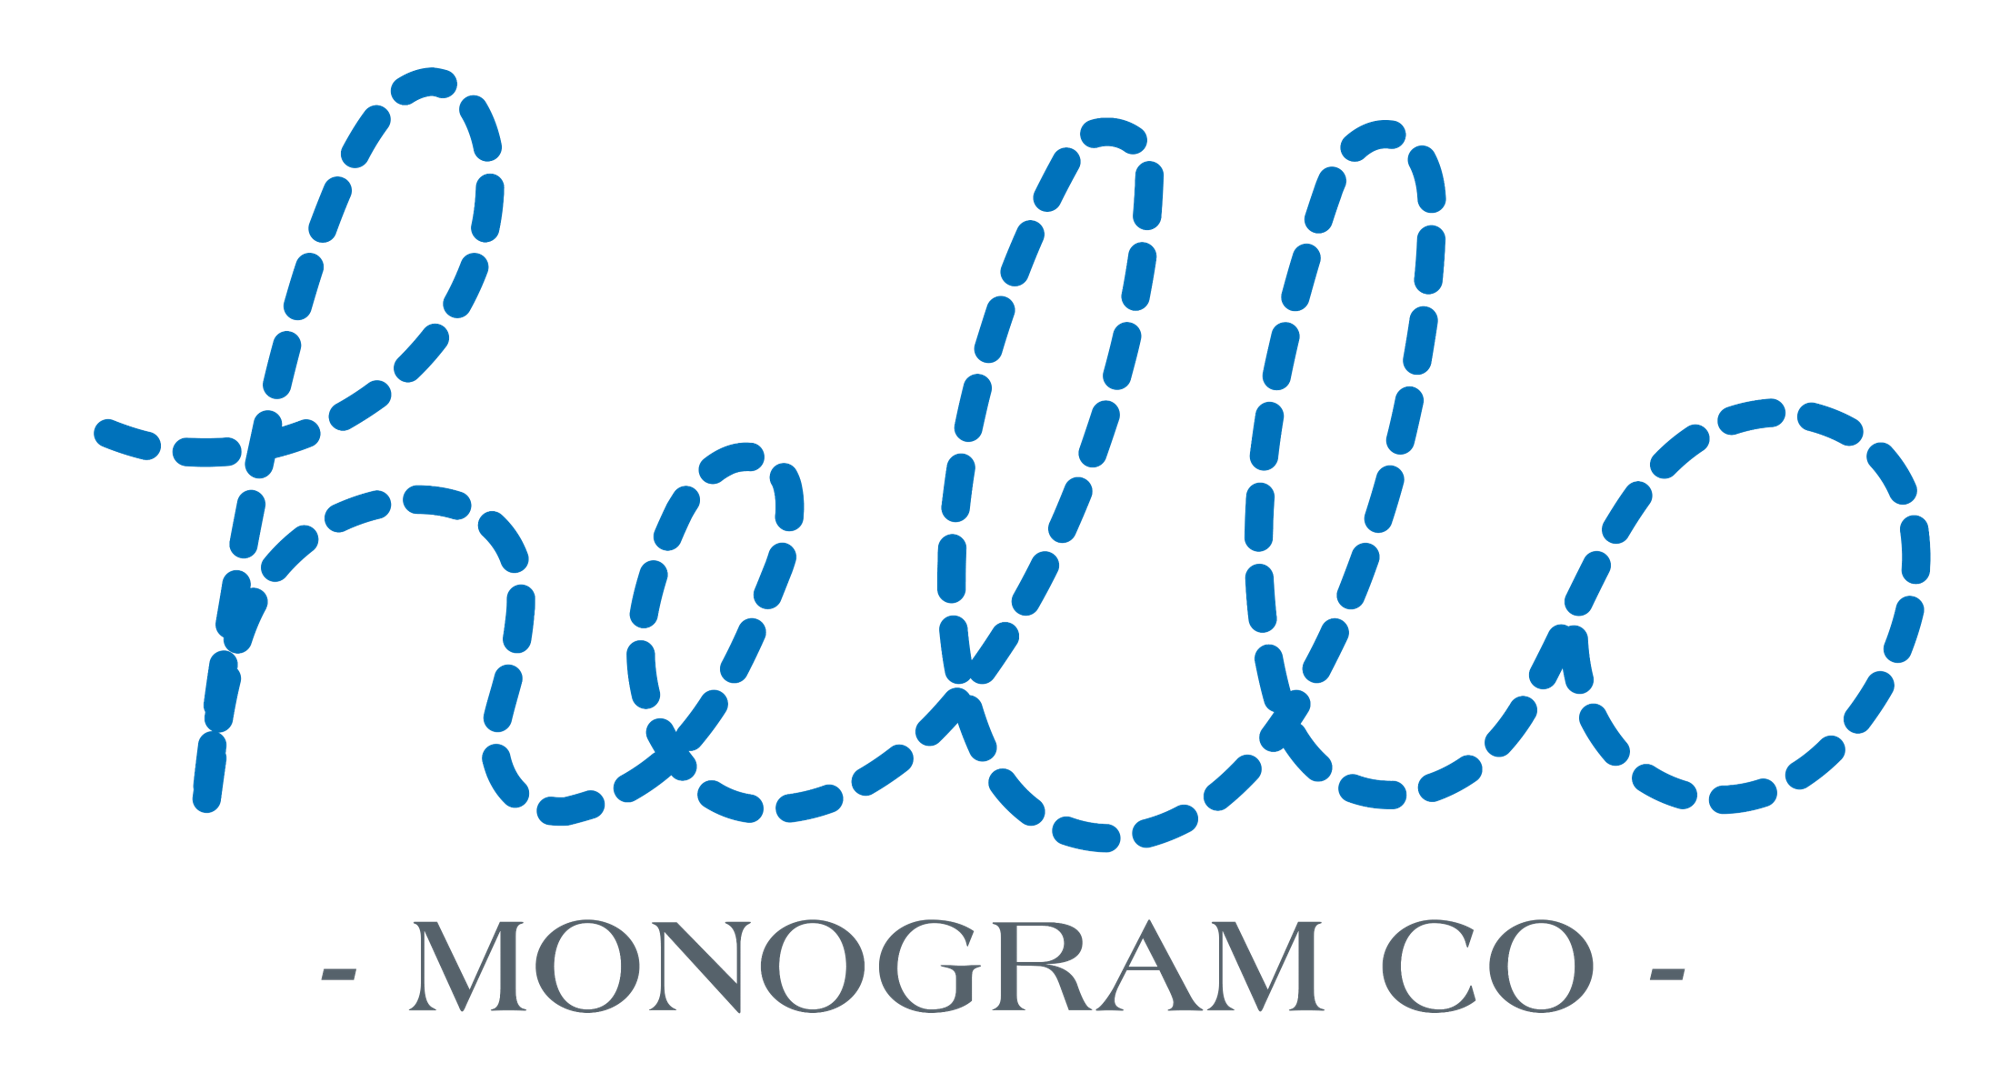 Hello Monogram Co